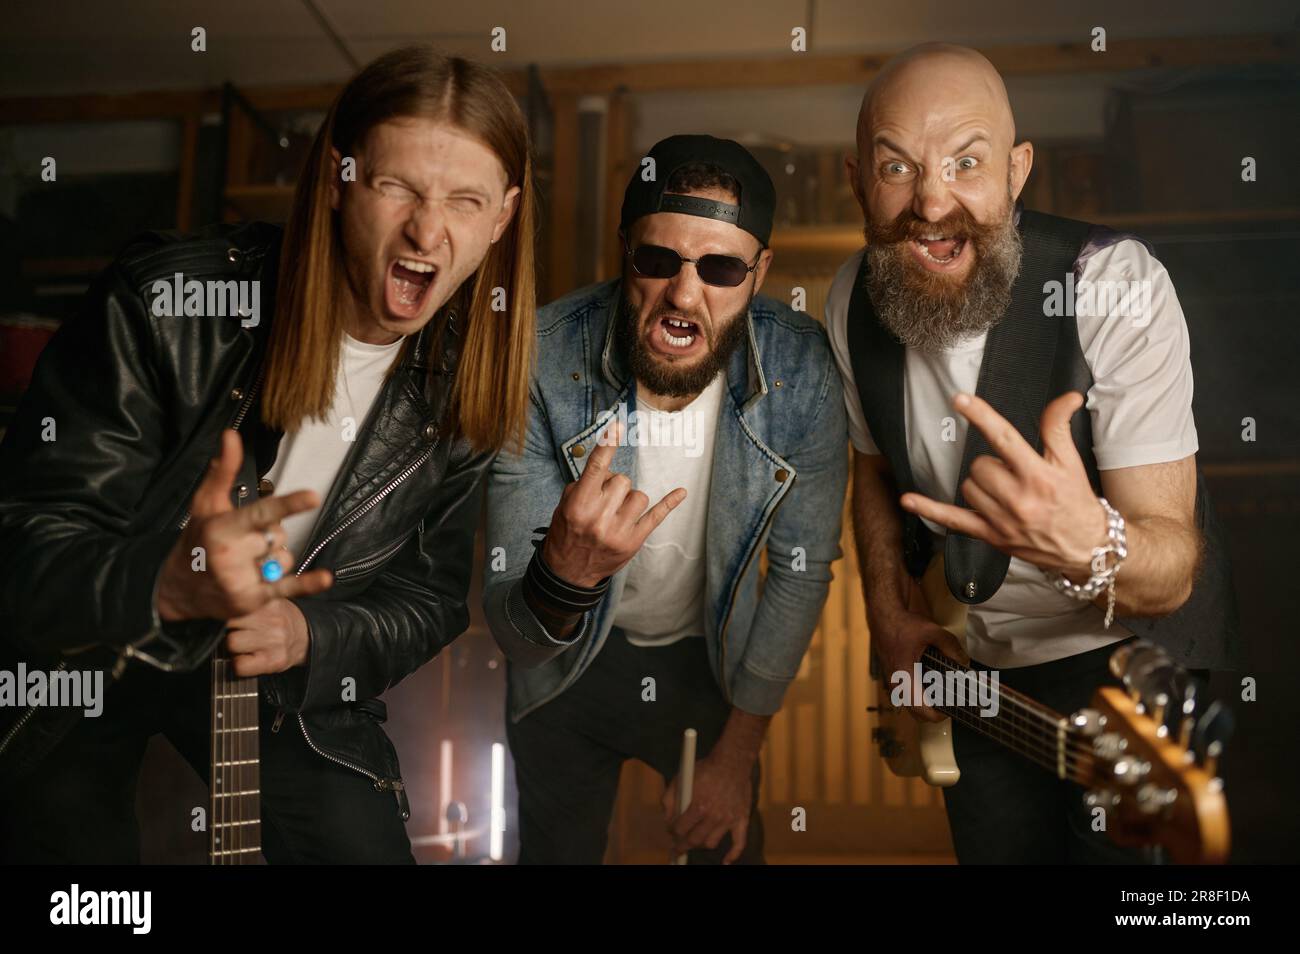 Crazy rock band artisti ritratto, musicisti funky gesturing rock-and-roll segno Foto Stock